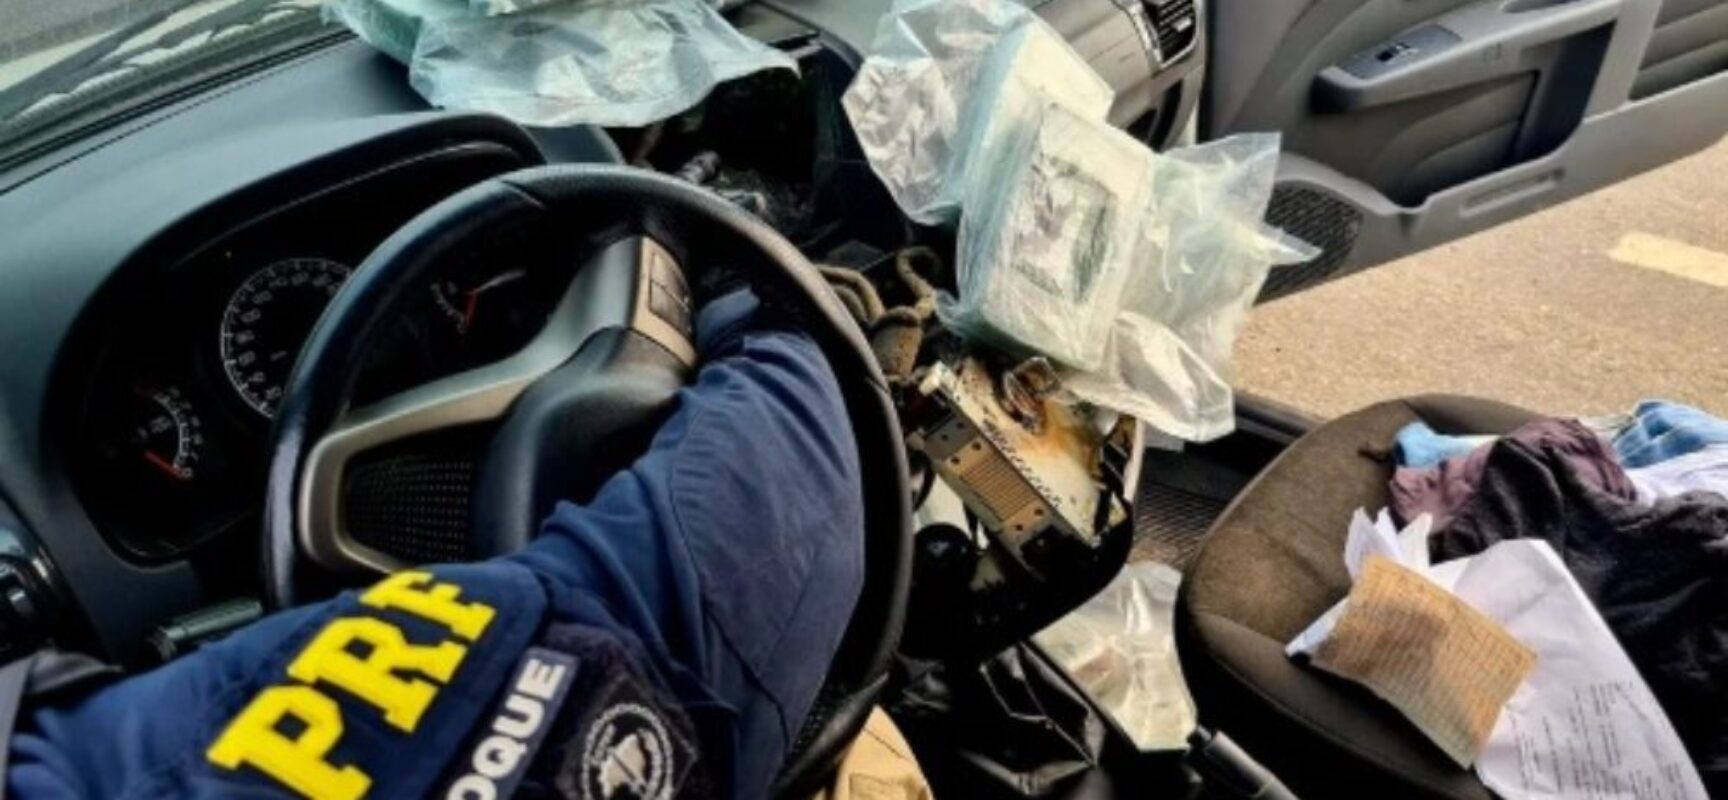 PRF encontra 21 kg de crack em painel de carro em caminhão-cegonha